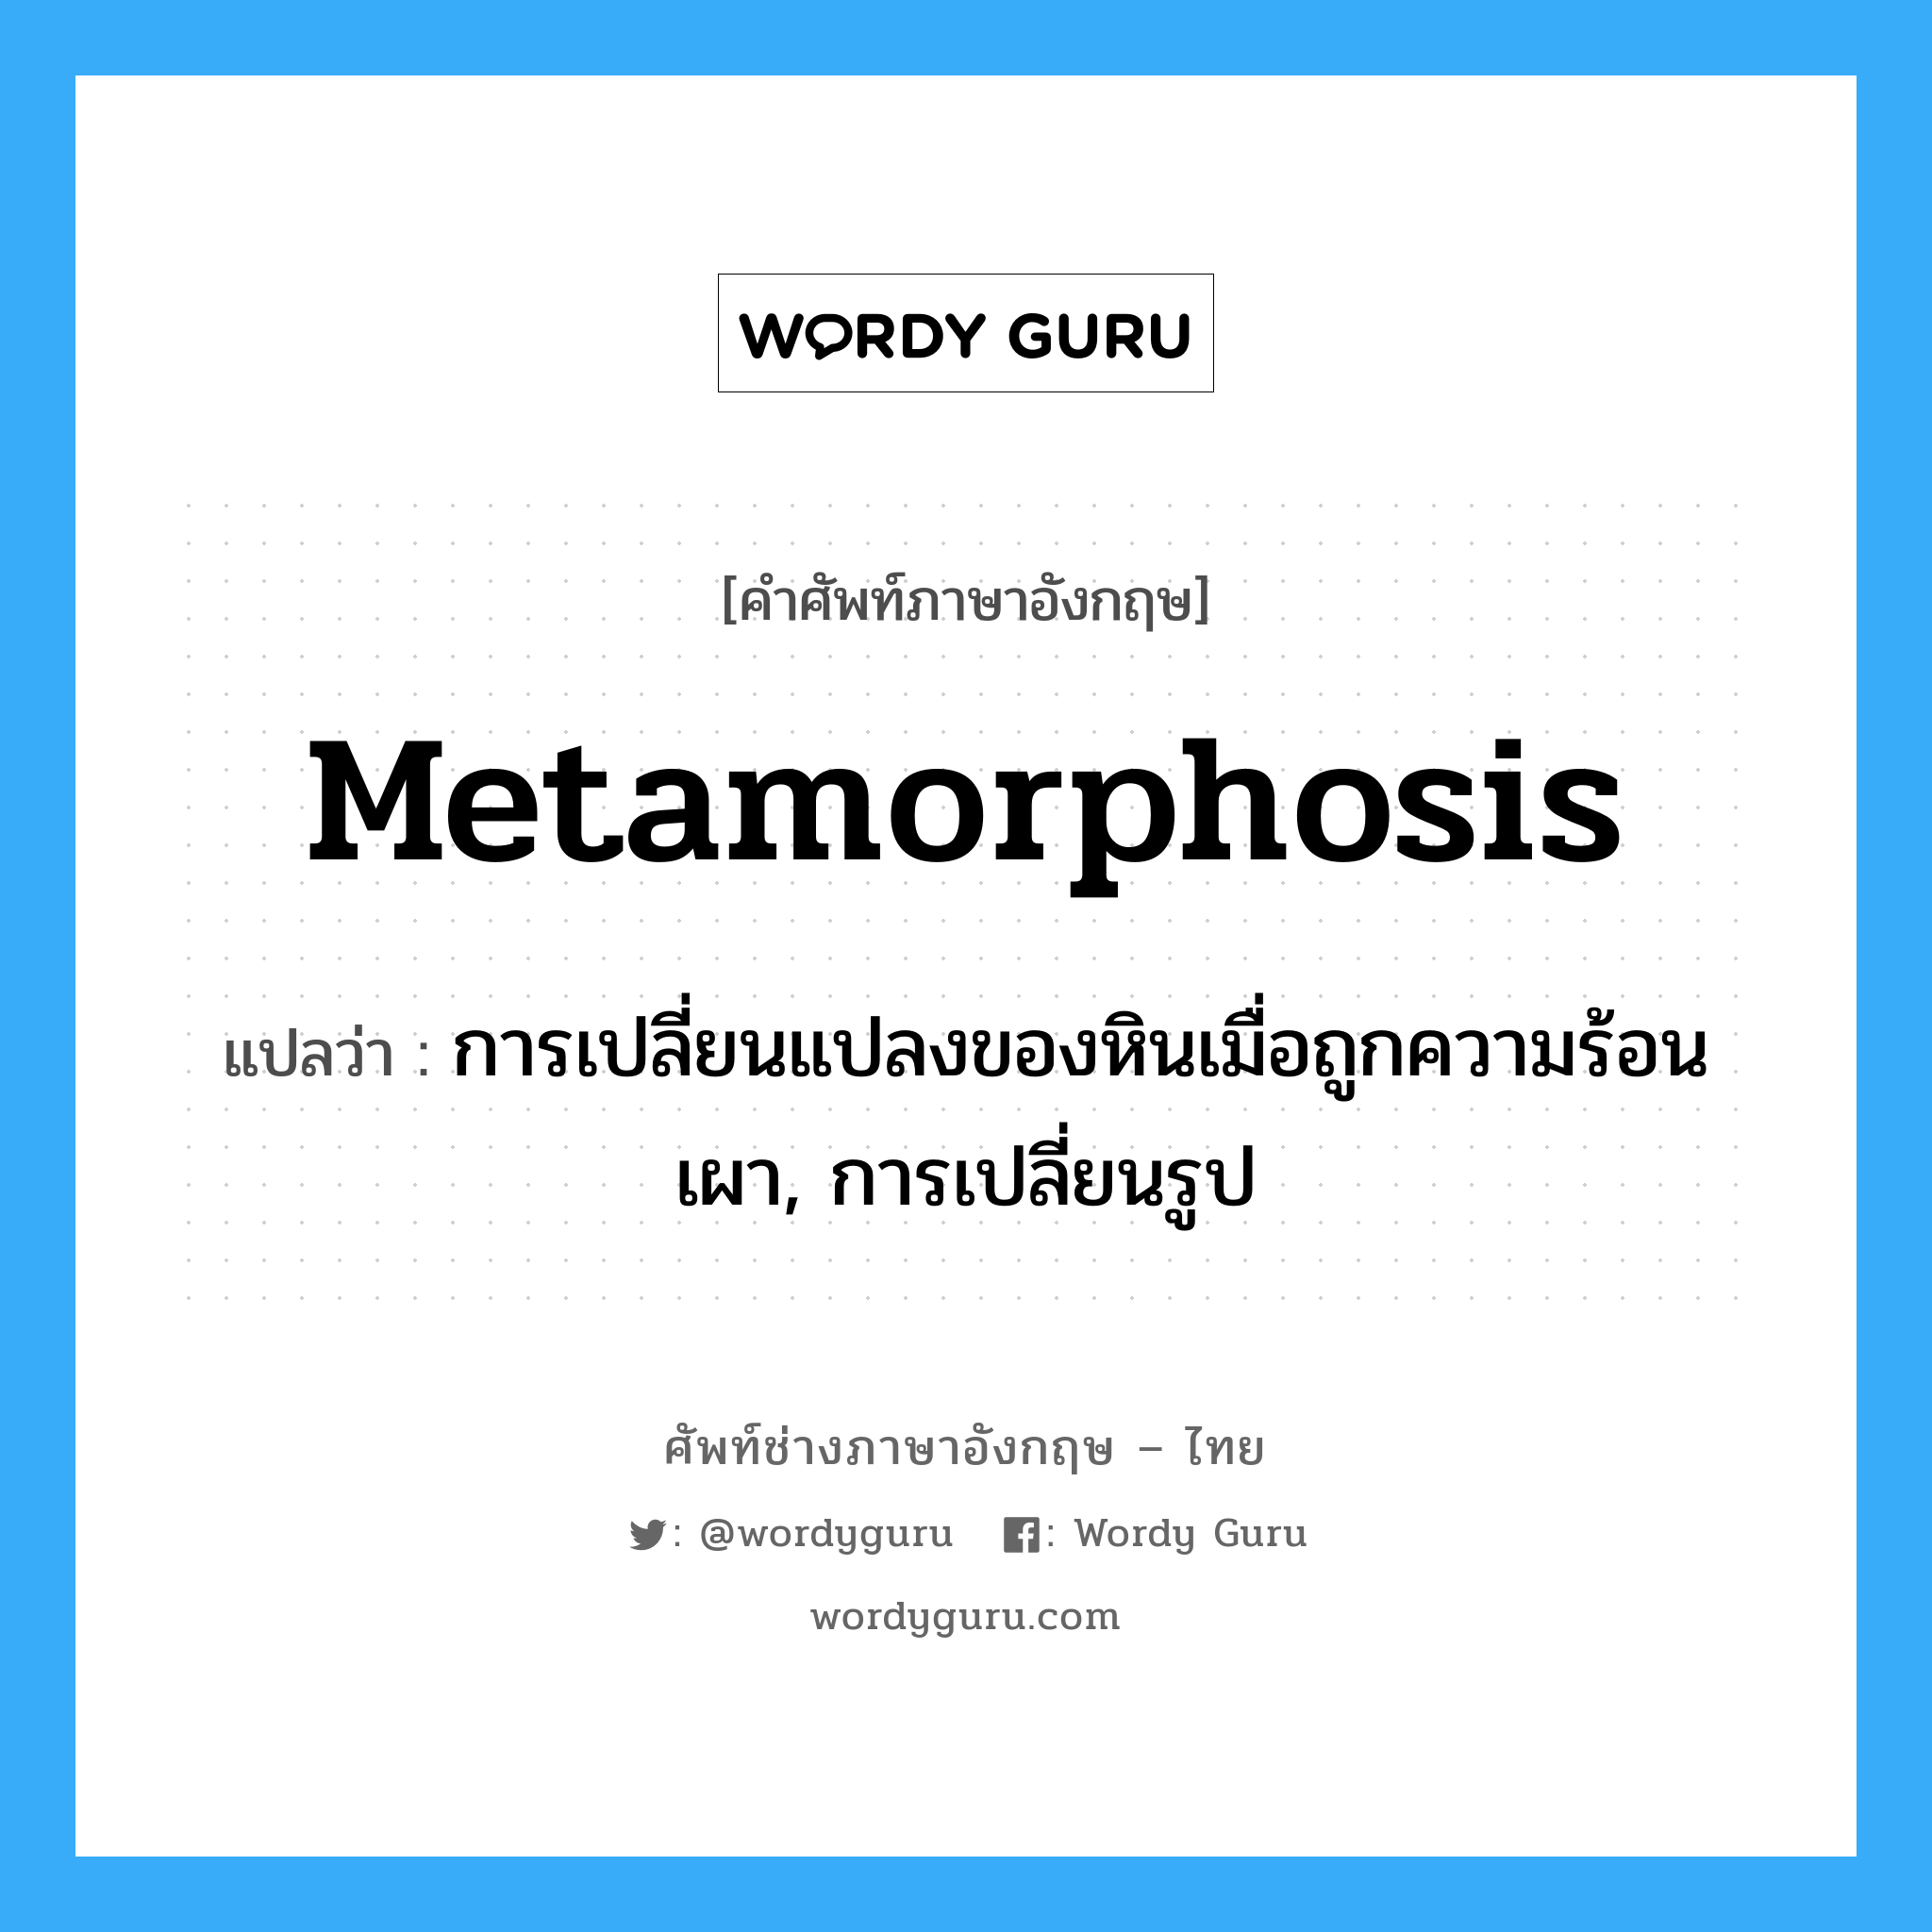 metamorphosis แปลว่า?, คำศัพท์ช่างภาษาอังกฤษ - ไทย metamorphosis คำศัพท์ภาษาอังกฤษ metamorphosis แปลว่า การเปลี่ยนแปลงของหินเมื่อถูกความร้อนเผา, การเปลี่ยนรูป